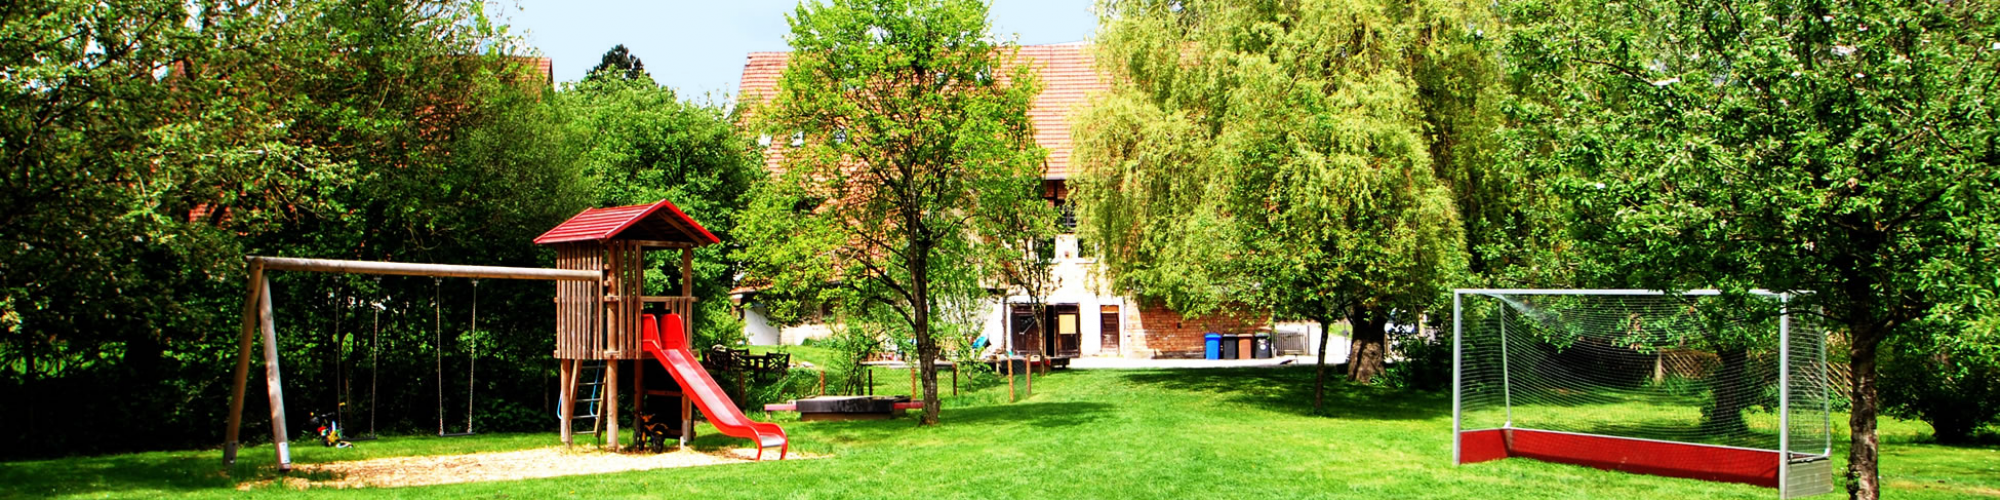 Kinderhaus Bodensee e.V.